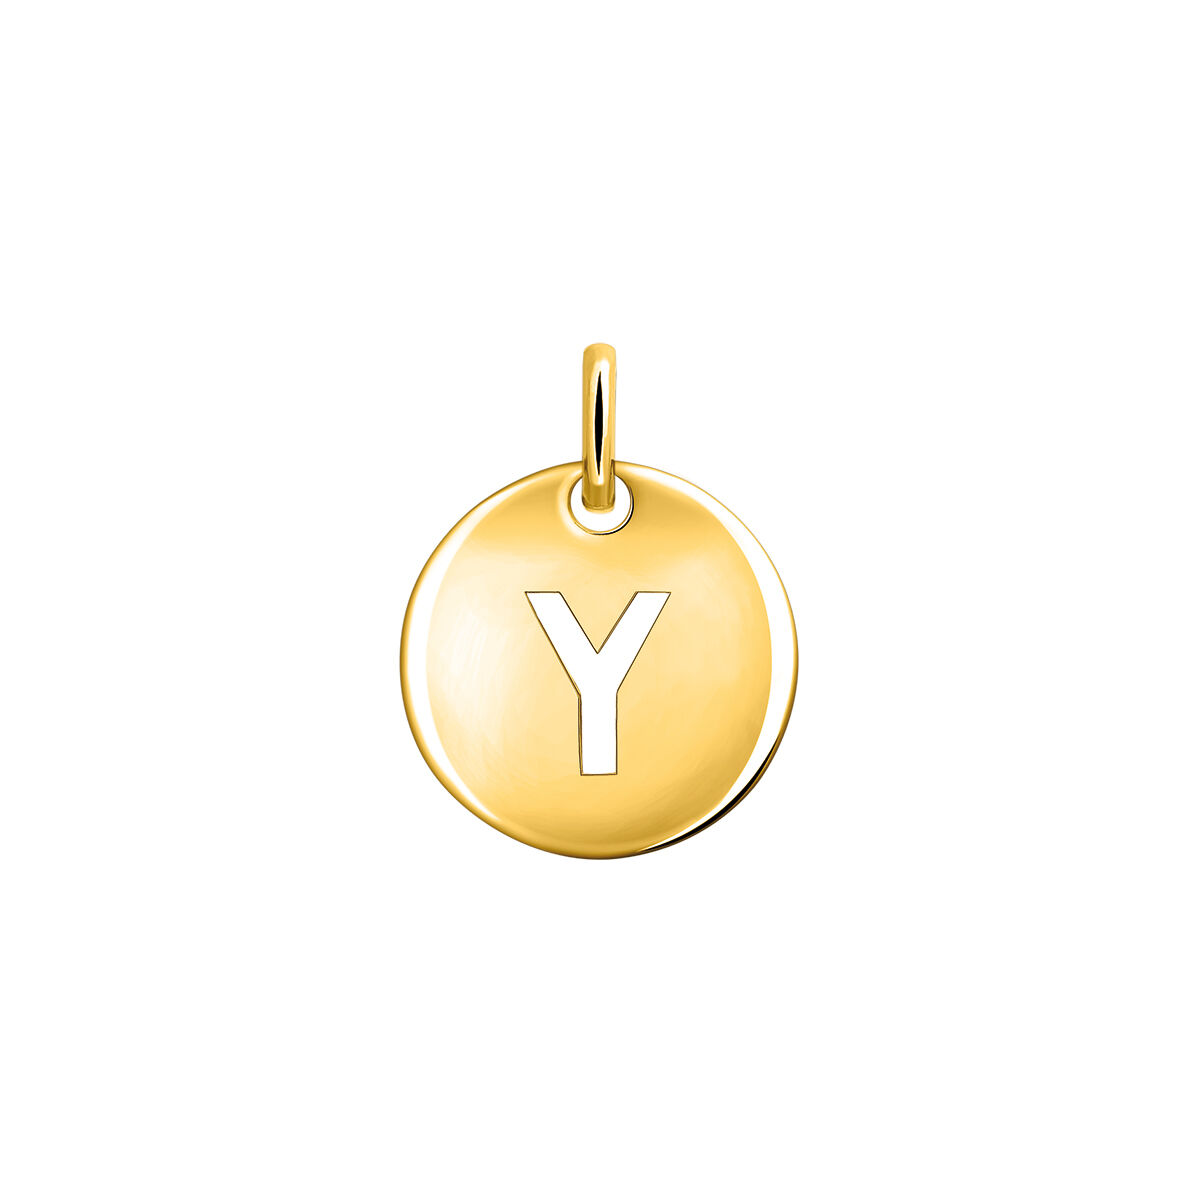 Charm medalla inicial Y plata recubierta oro  , J03455-02-Y, mainproduct